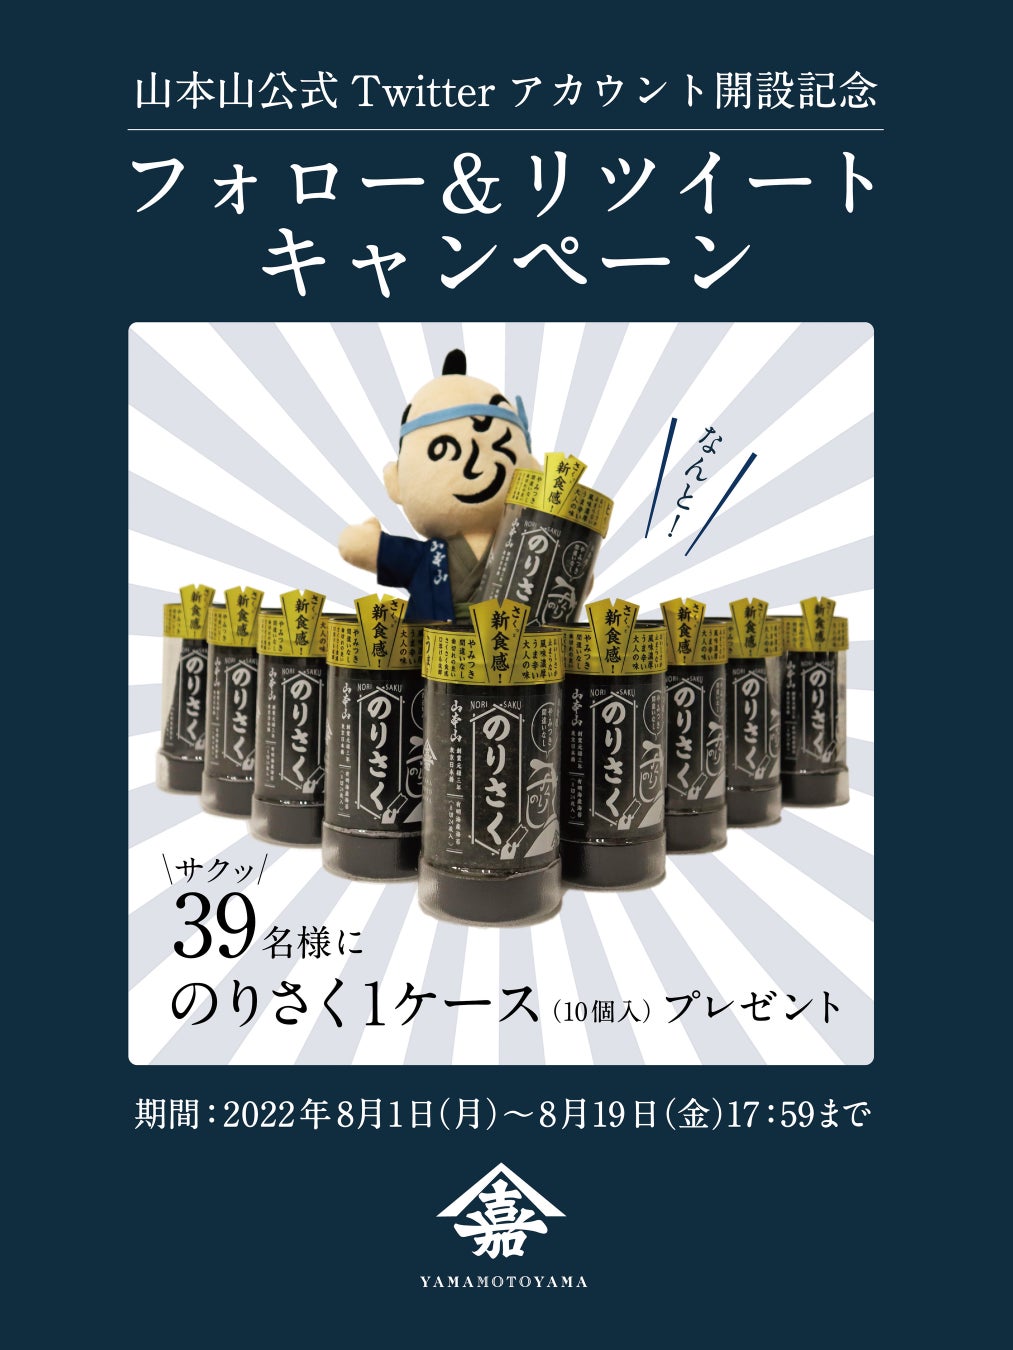 山本山公式Twitterアカウント開設記念！お酒のおつまみにピッタリなスナック海苔『のりさく』が当たるキャンペーンを8月1日(月)より開催